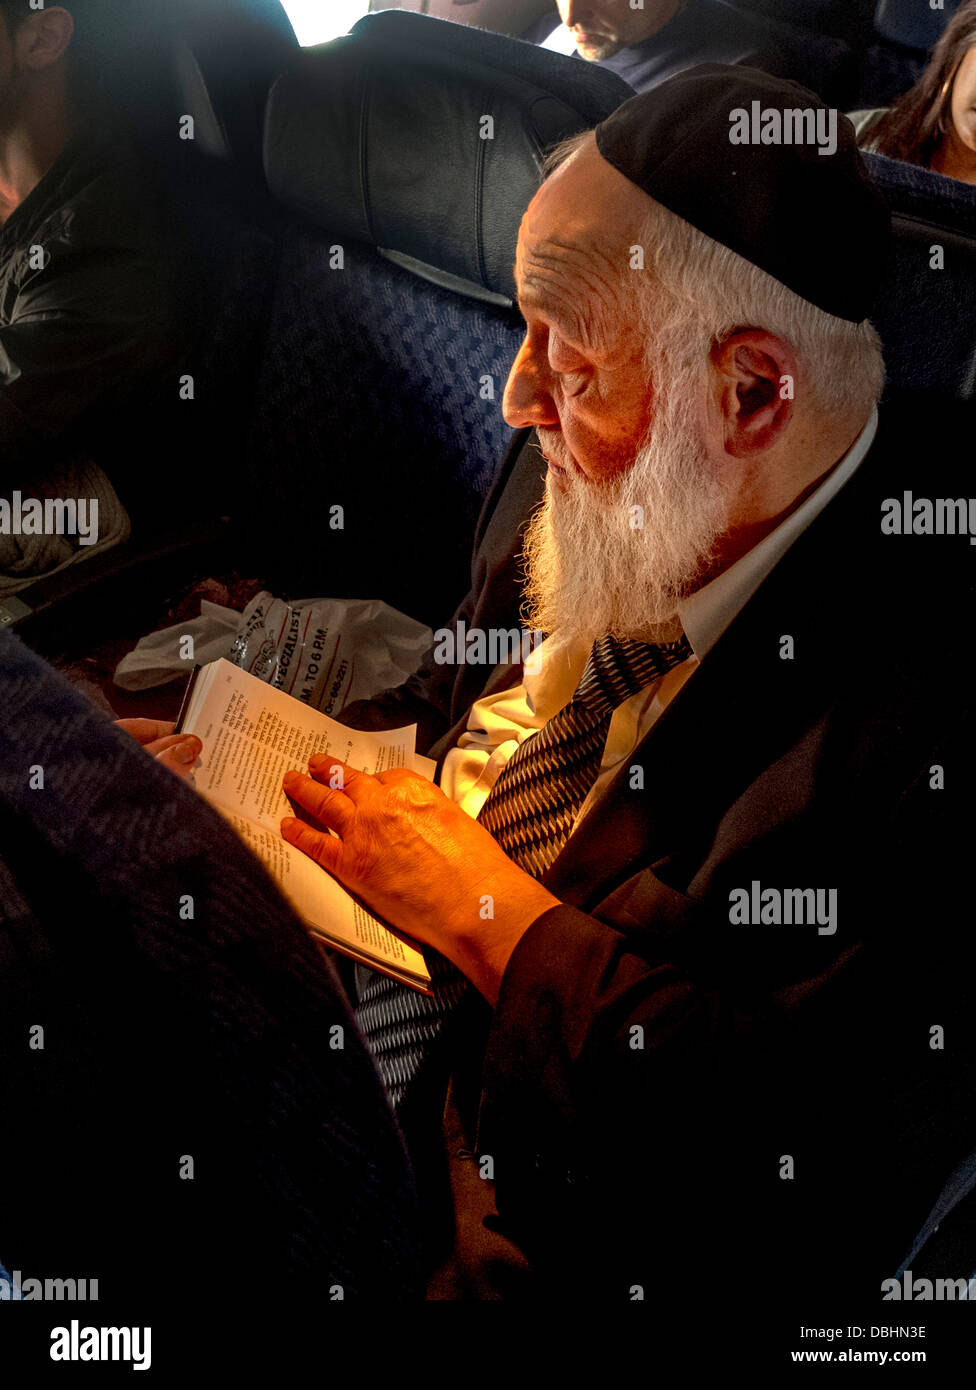 Tragen eine Kippa Käppchen, liest ein bärtiger orthodoxer Jude aus einem Buch auf Hebräisch auf ein Verkehrsflugzeug Stockfoto